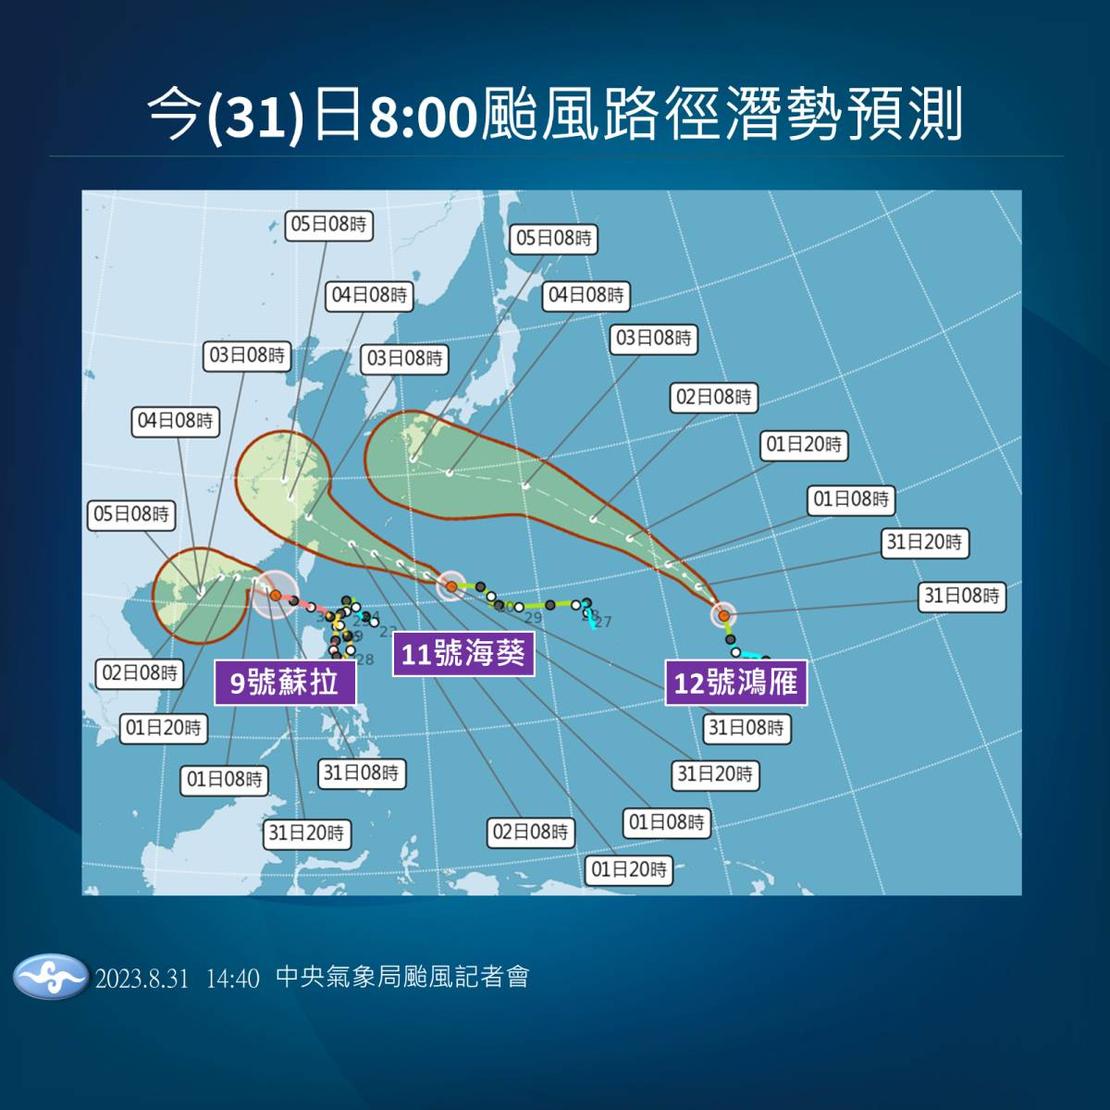 Taifun-Track-Prognose